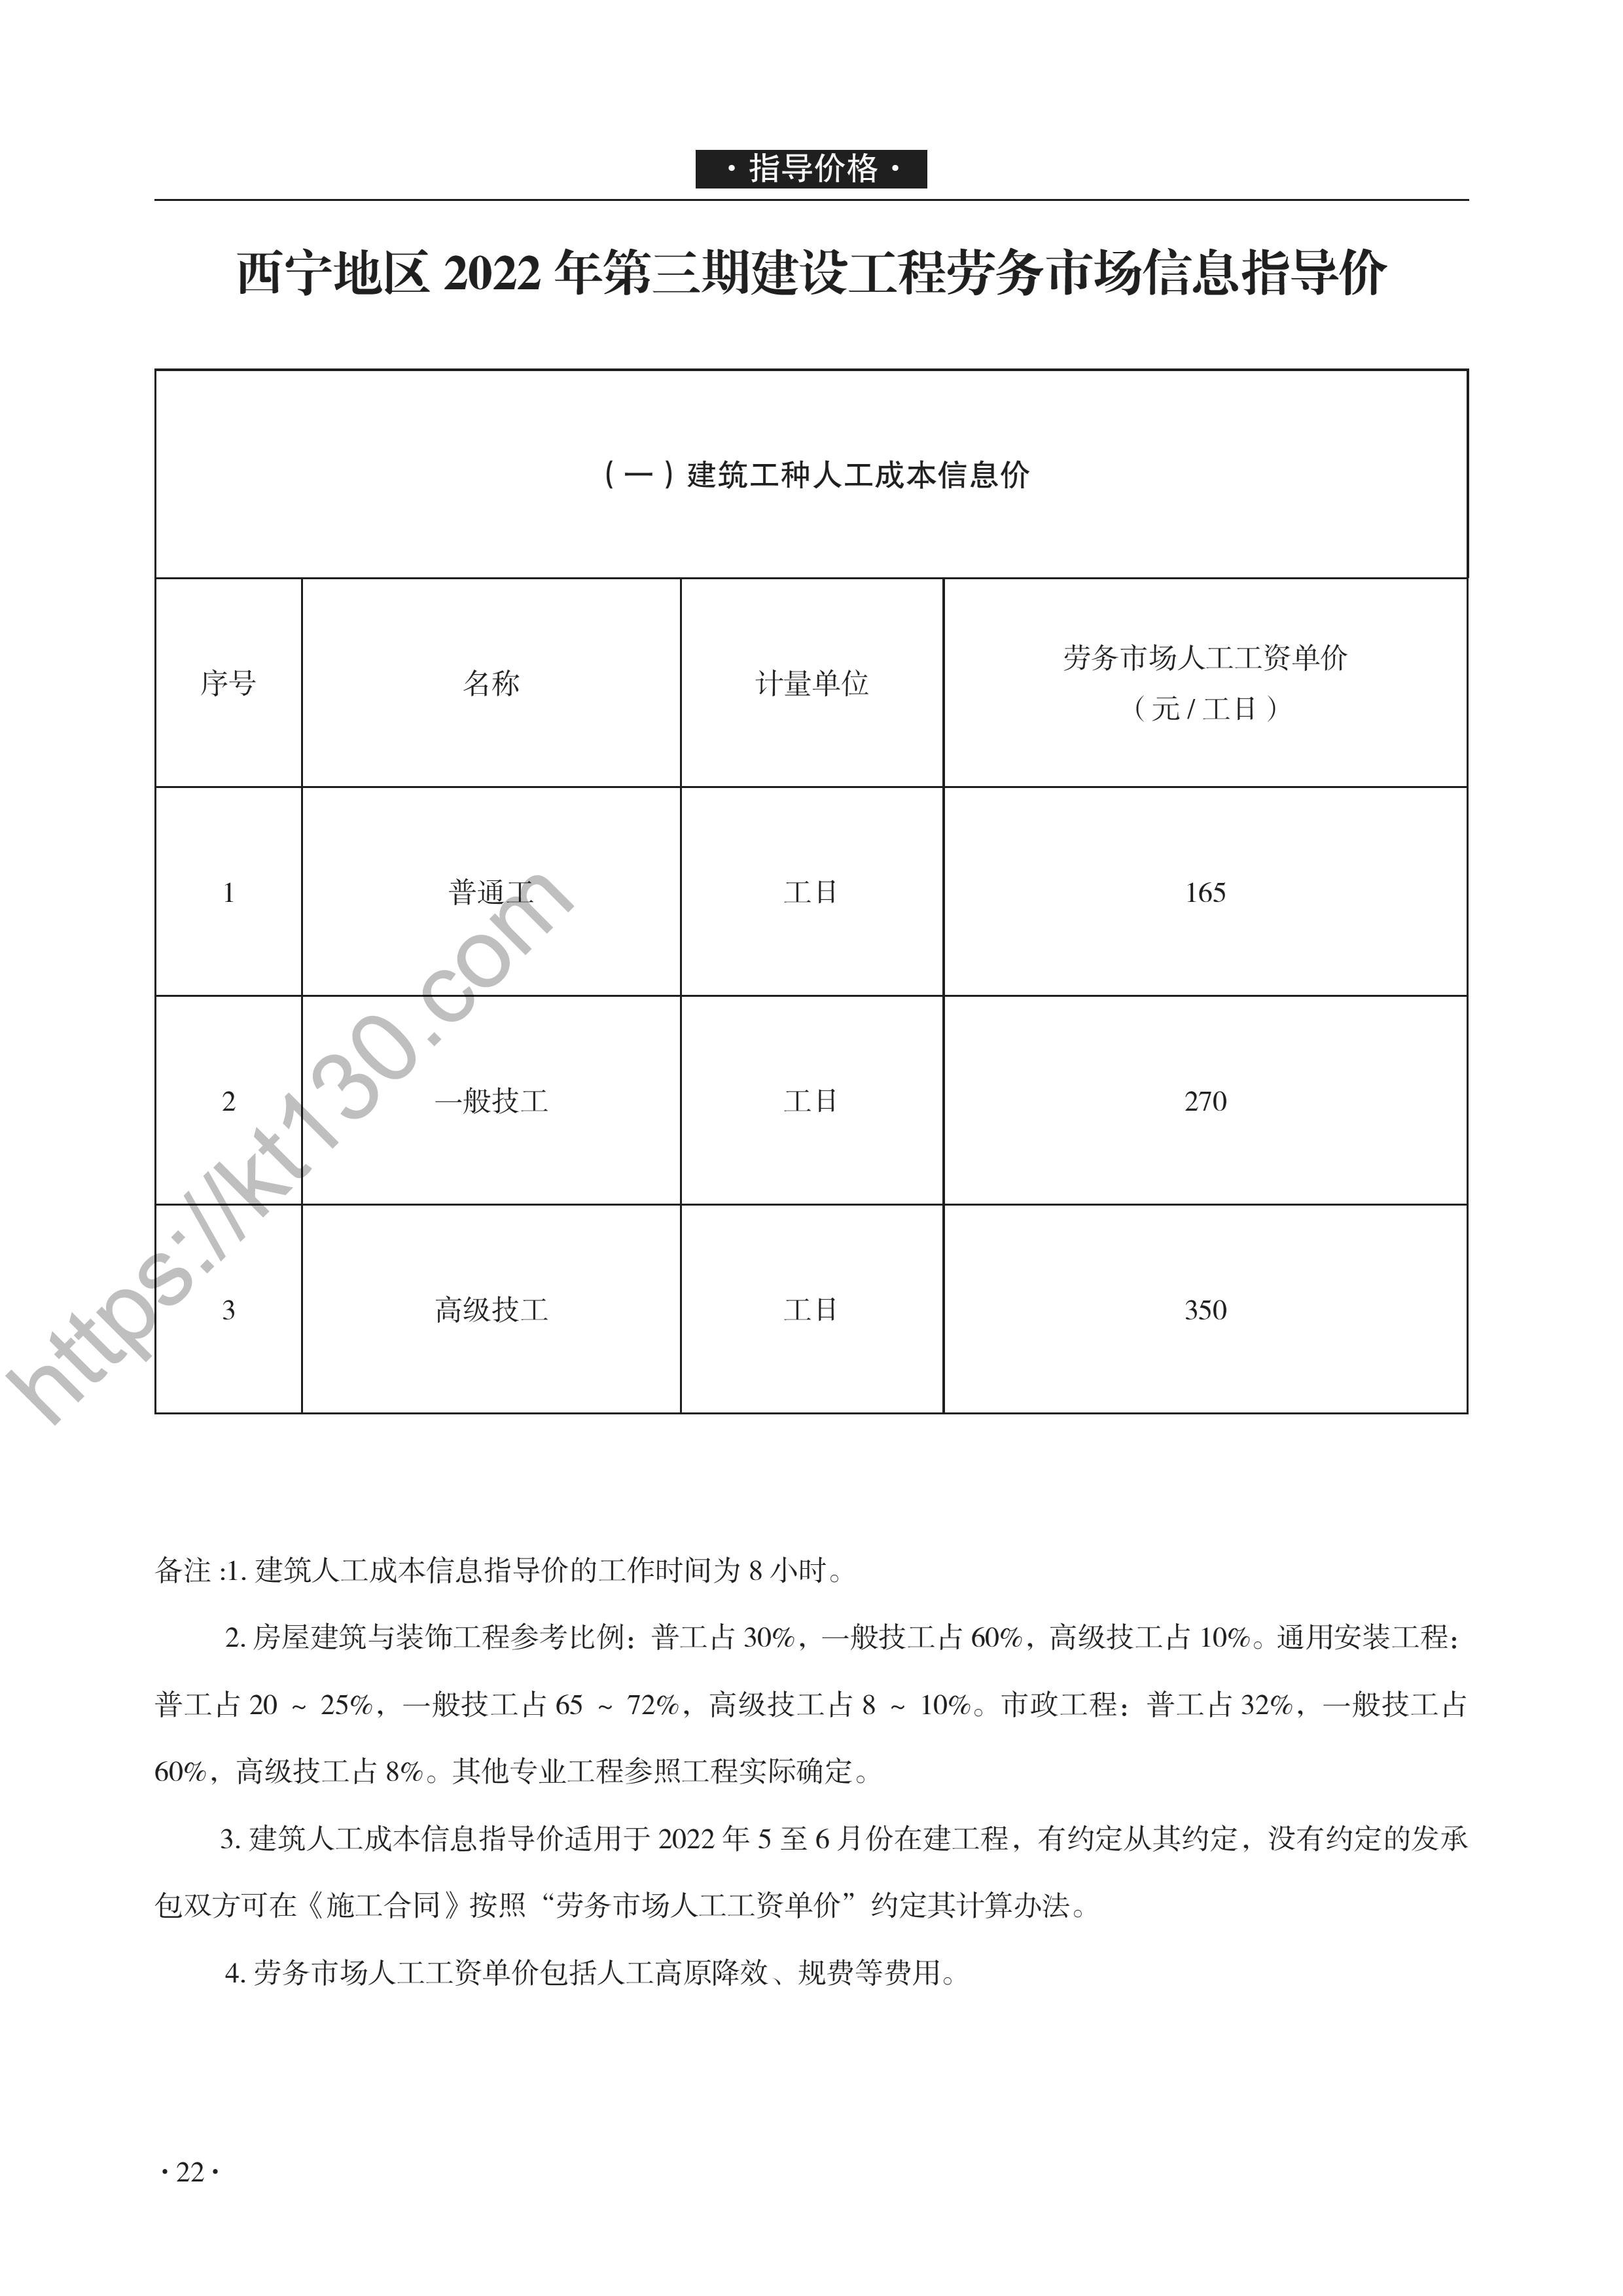 青海省2022年5-6月建筑材料价_透水砖_46968